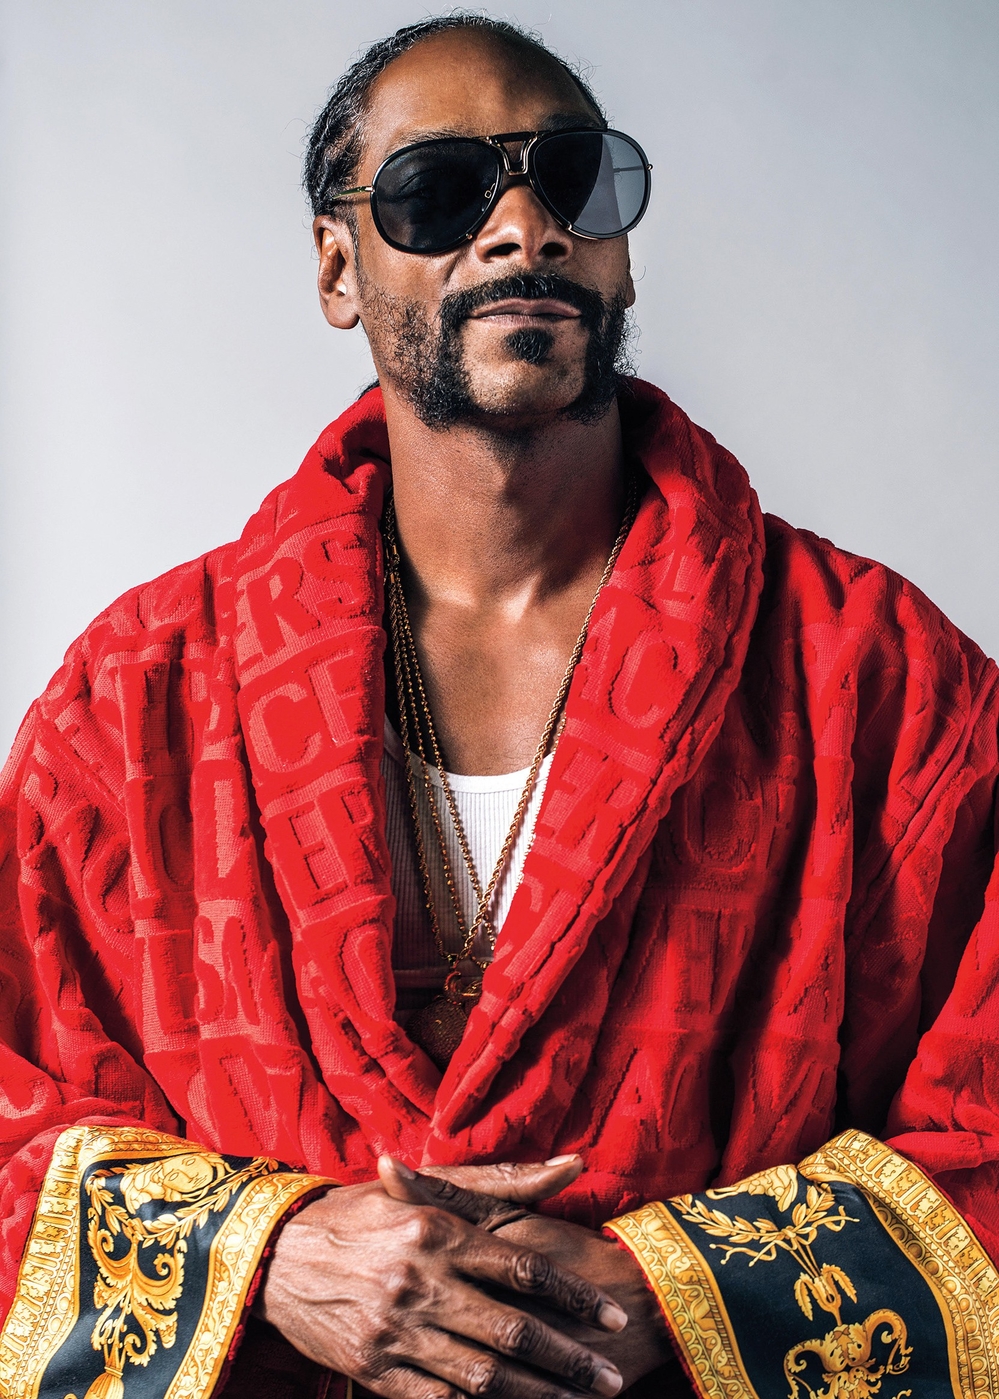  
Snoop Dogg - huyền thoại từ cuộc đời đến sự nghiệp đều đưa người hâm mộ đi hết bất ngờ này đến bất ngờ khác